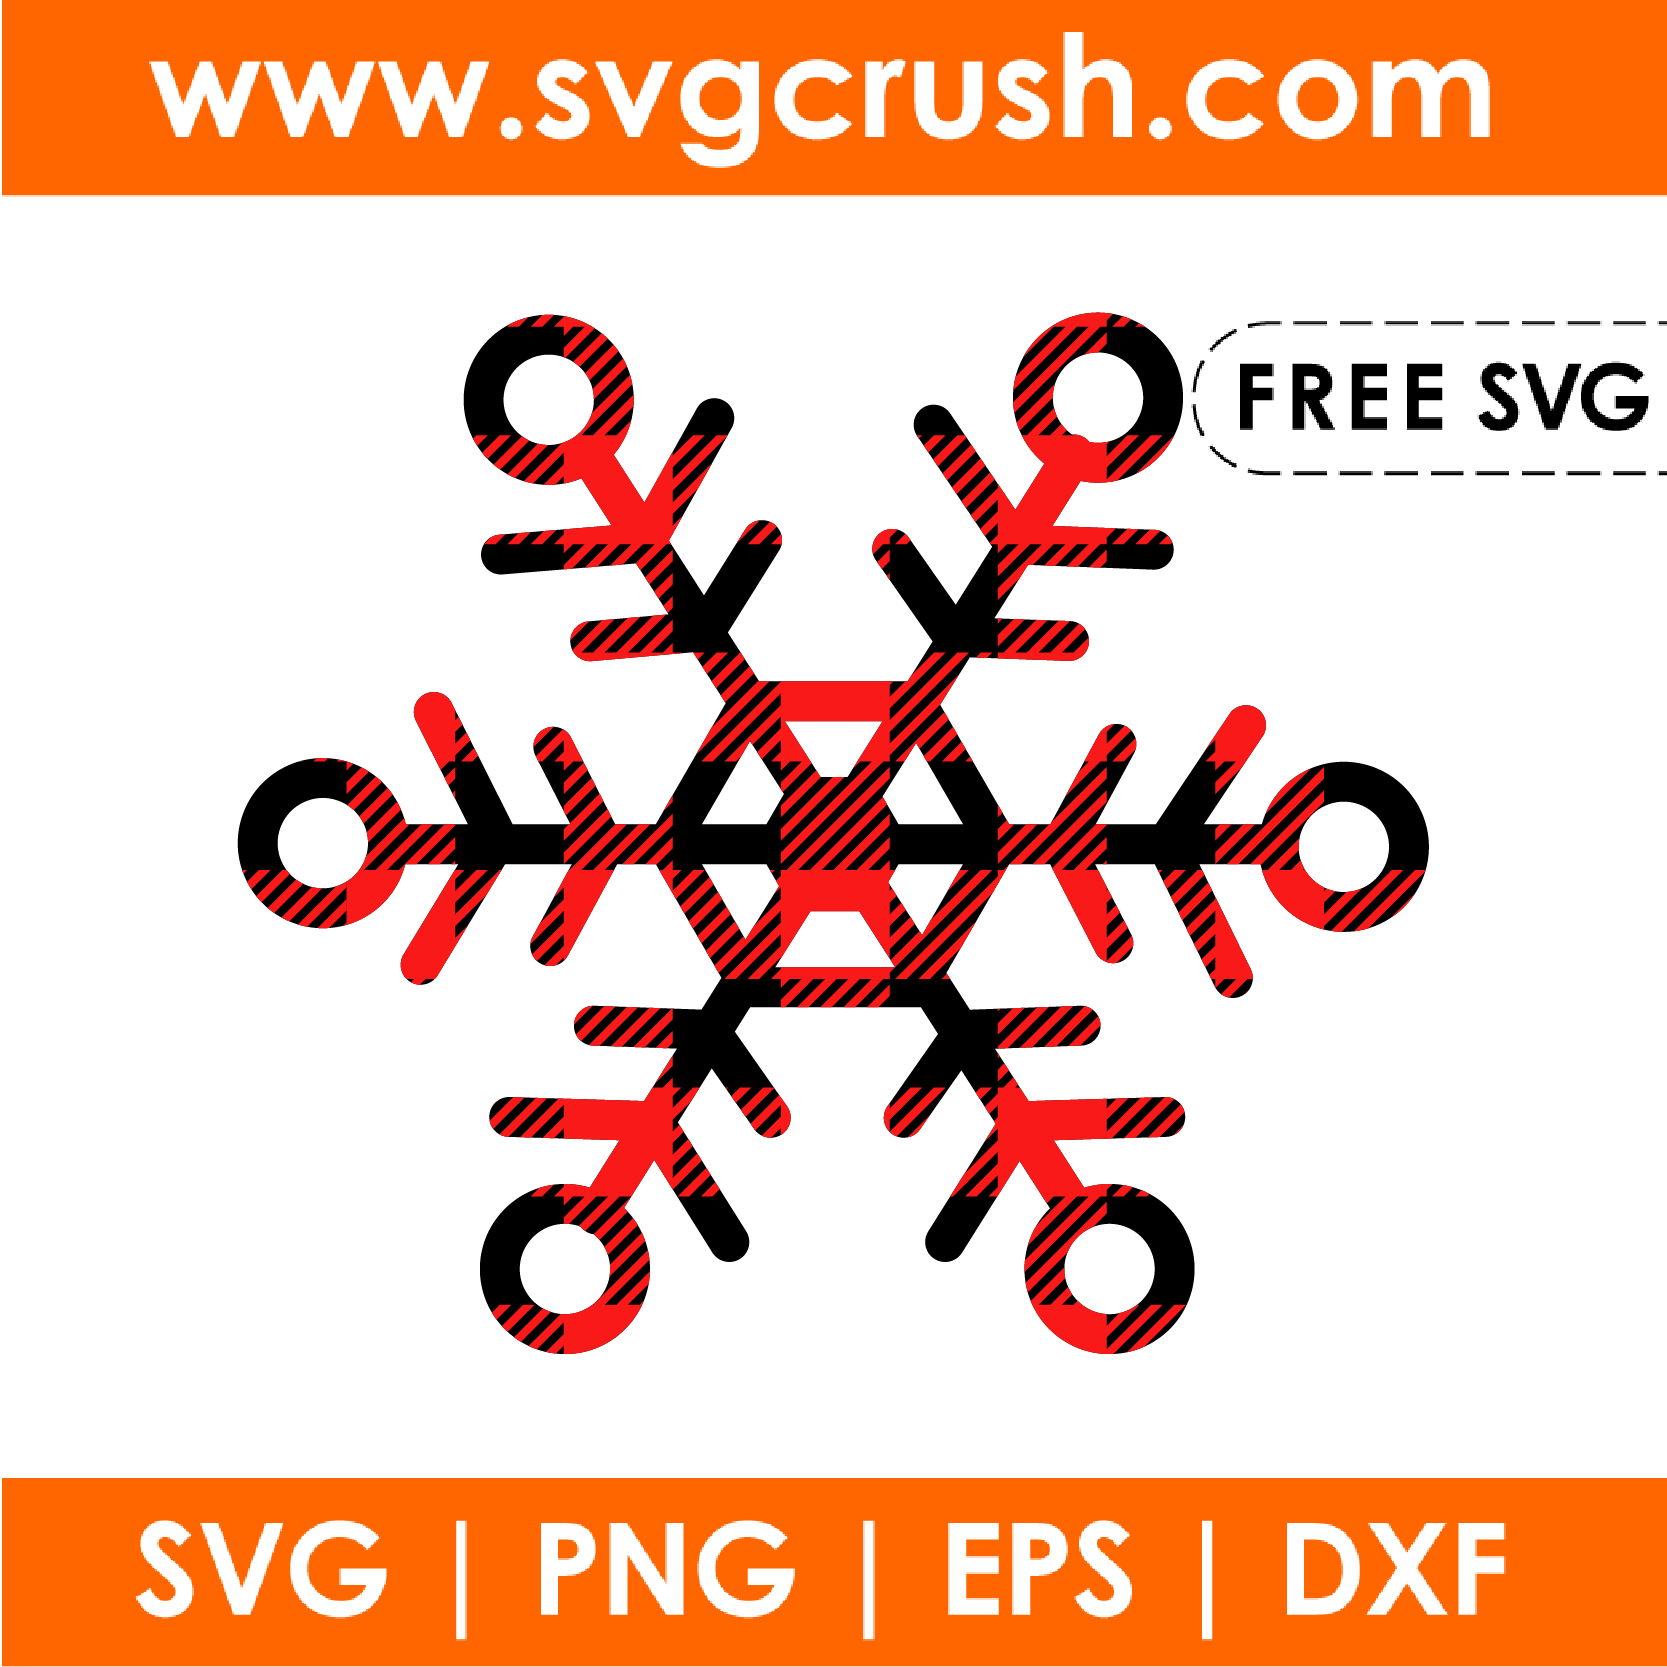 free snowflake-plaid-001 svg